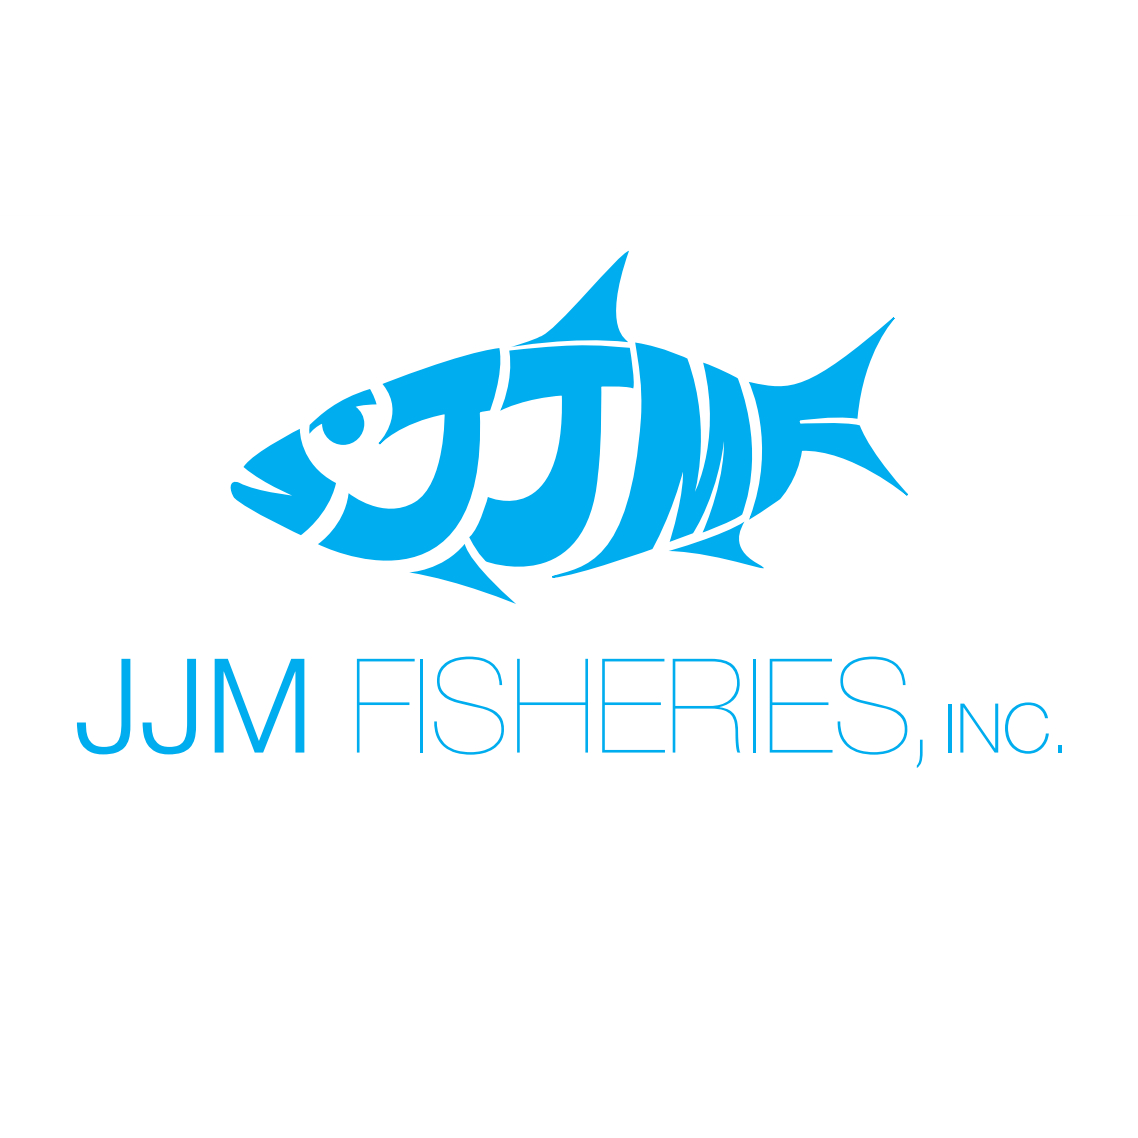 JJM Fisheries